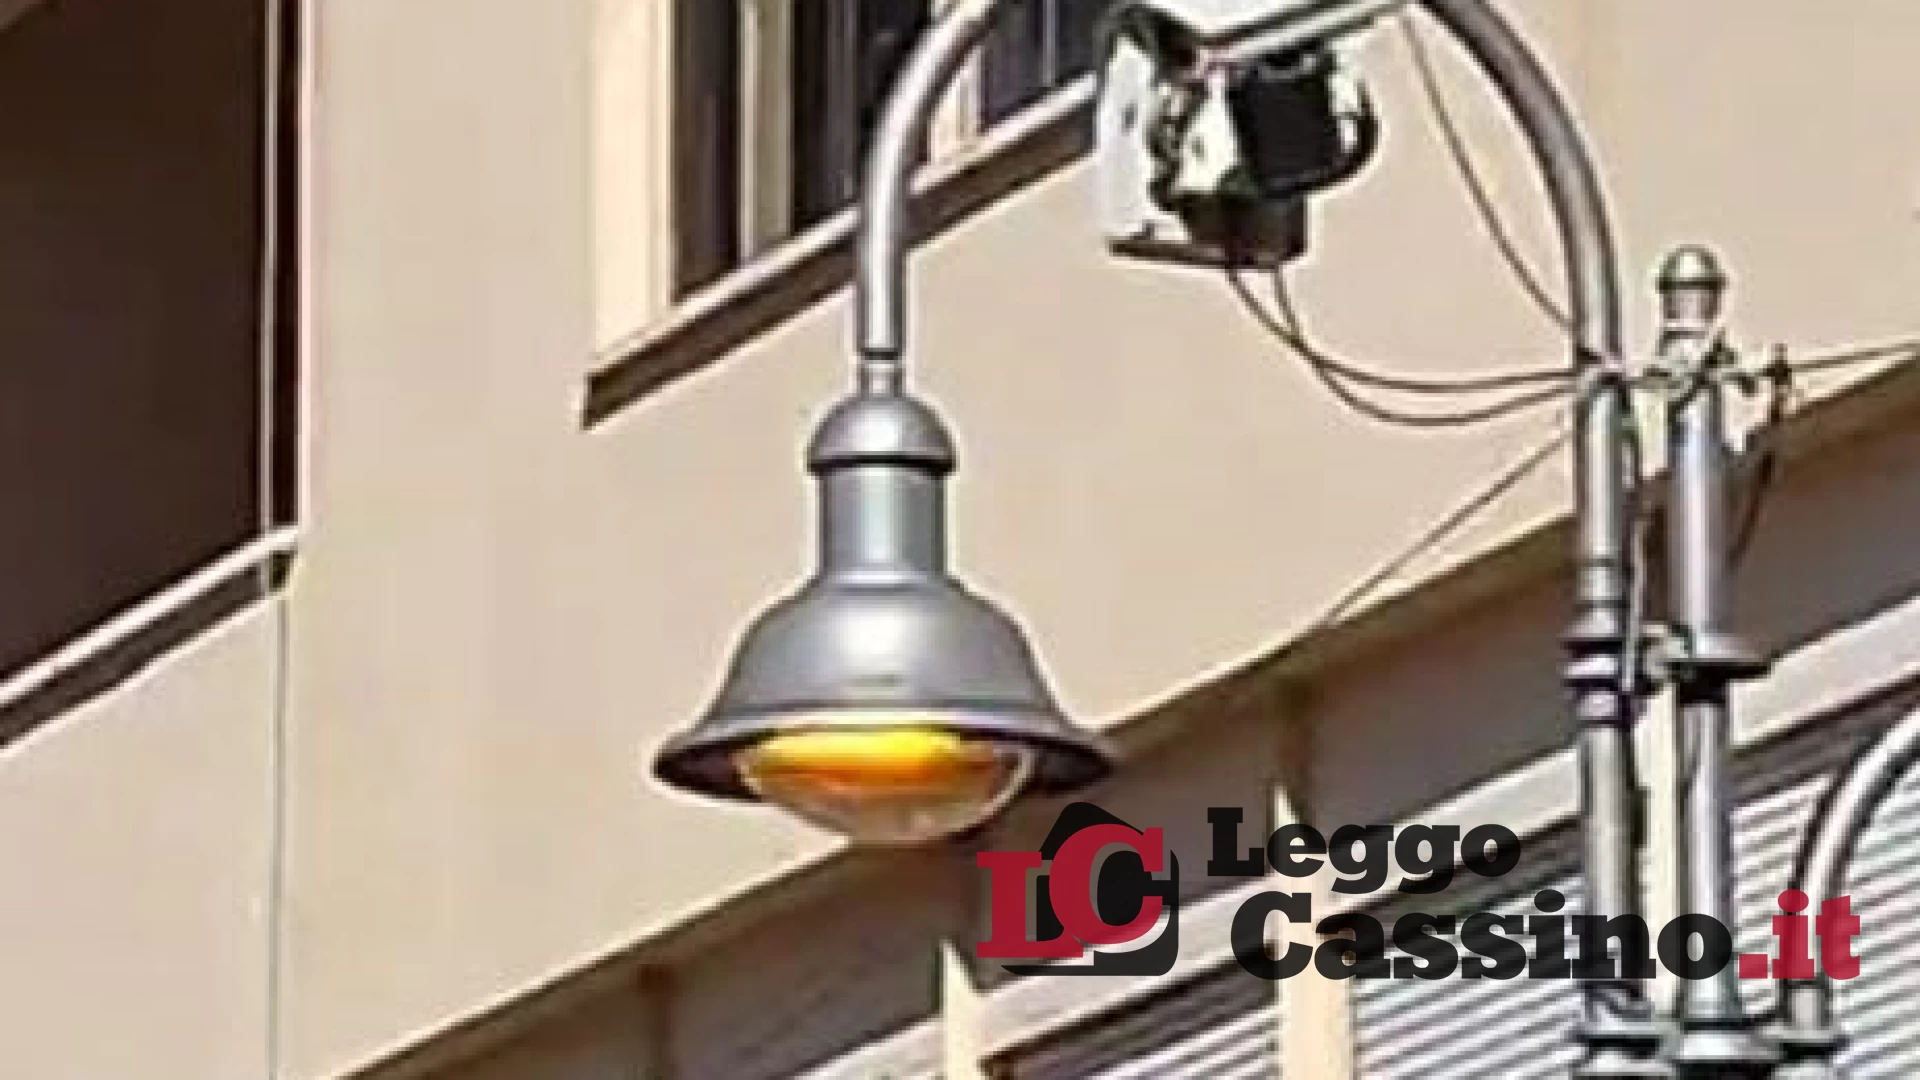 Pignataro spegne i lampioni la sera, a Cassino accesi anche di giorno